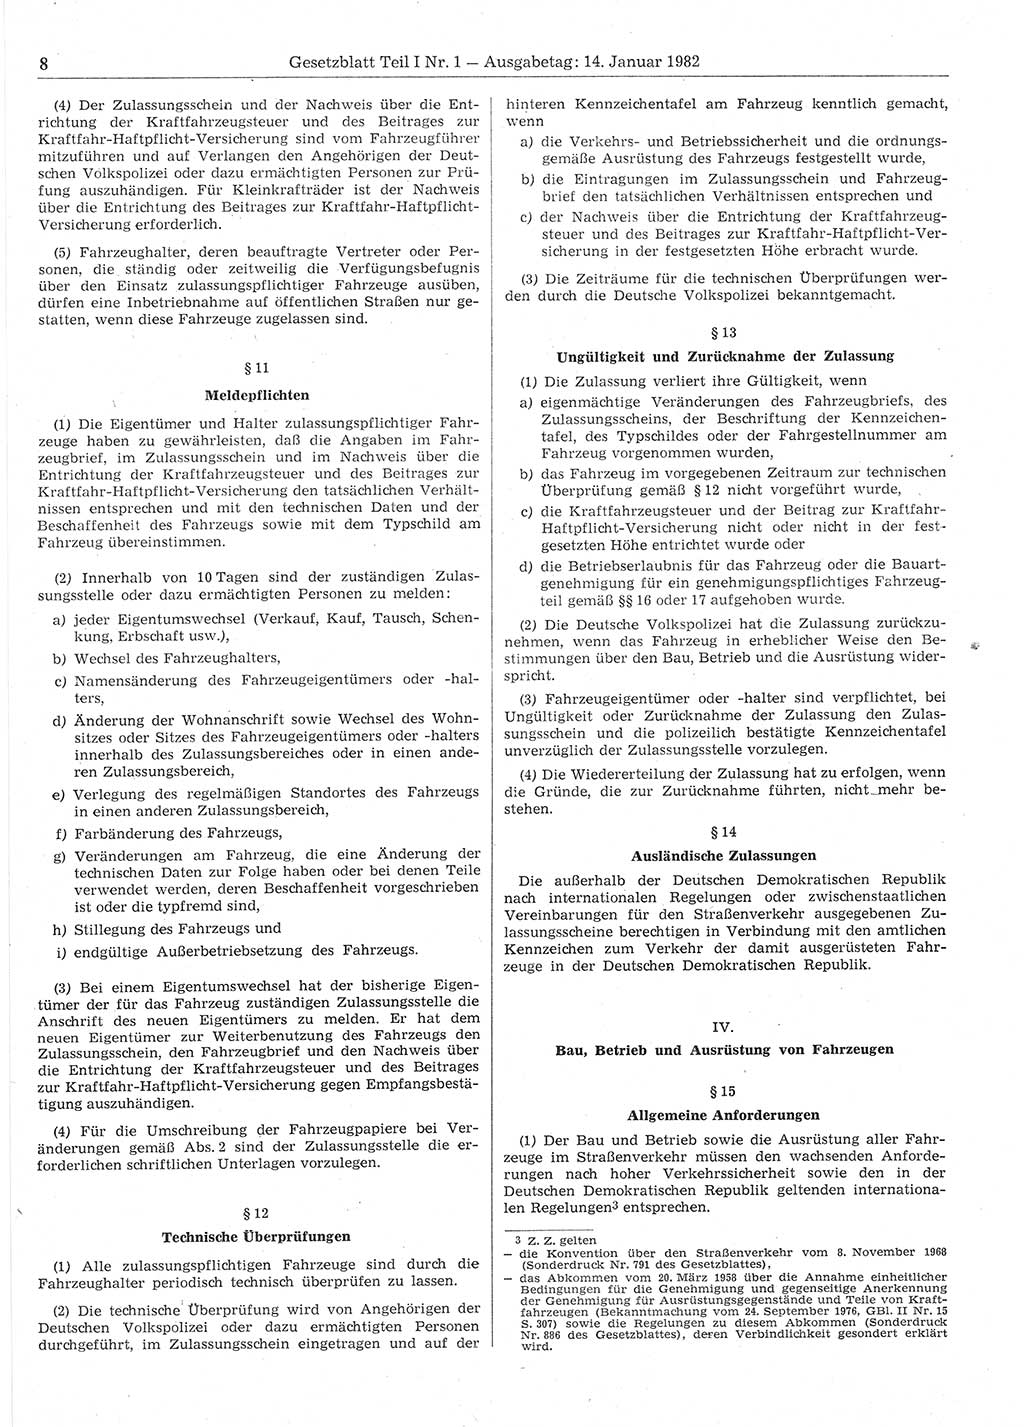 Gesetzblatt (GBl.) der Deutschen Demokratischen Republik (DDR) Teil Ⅰ 1982, Seite 8 (GBl. DDR Ⅰ 1982, S. 8)